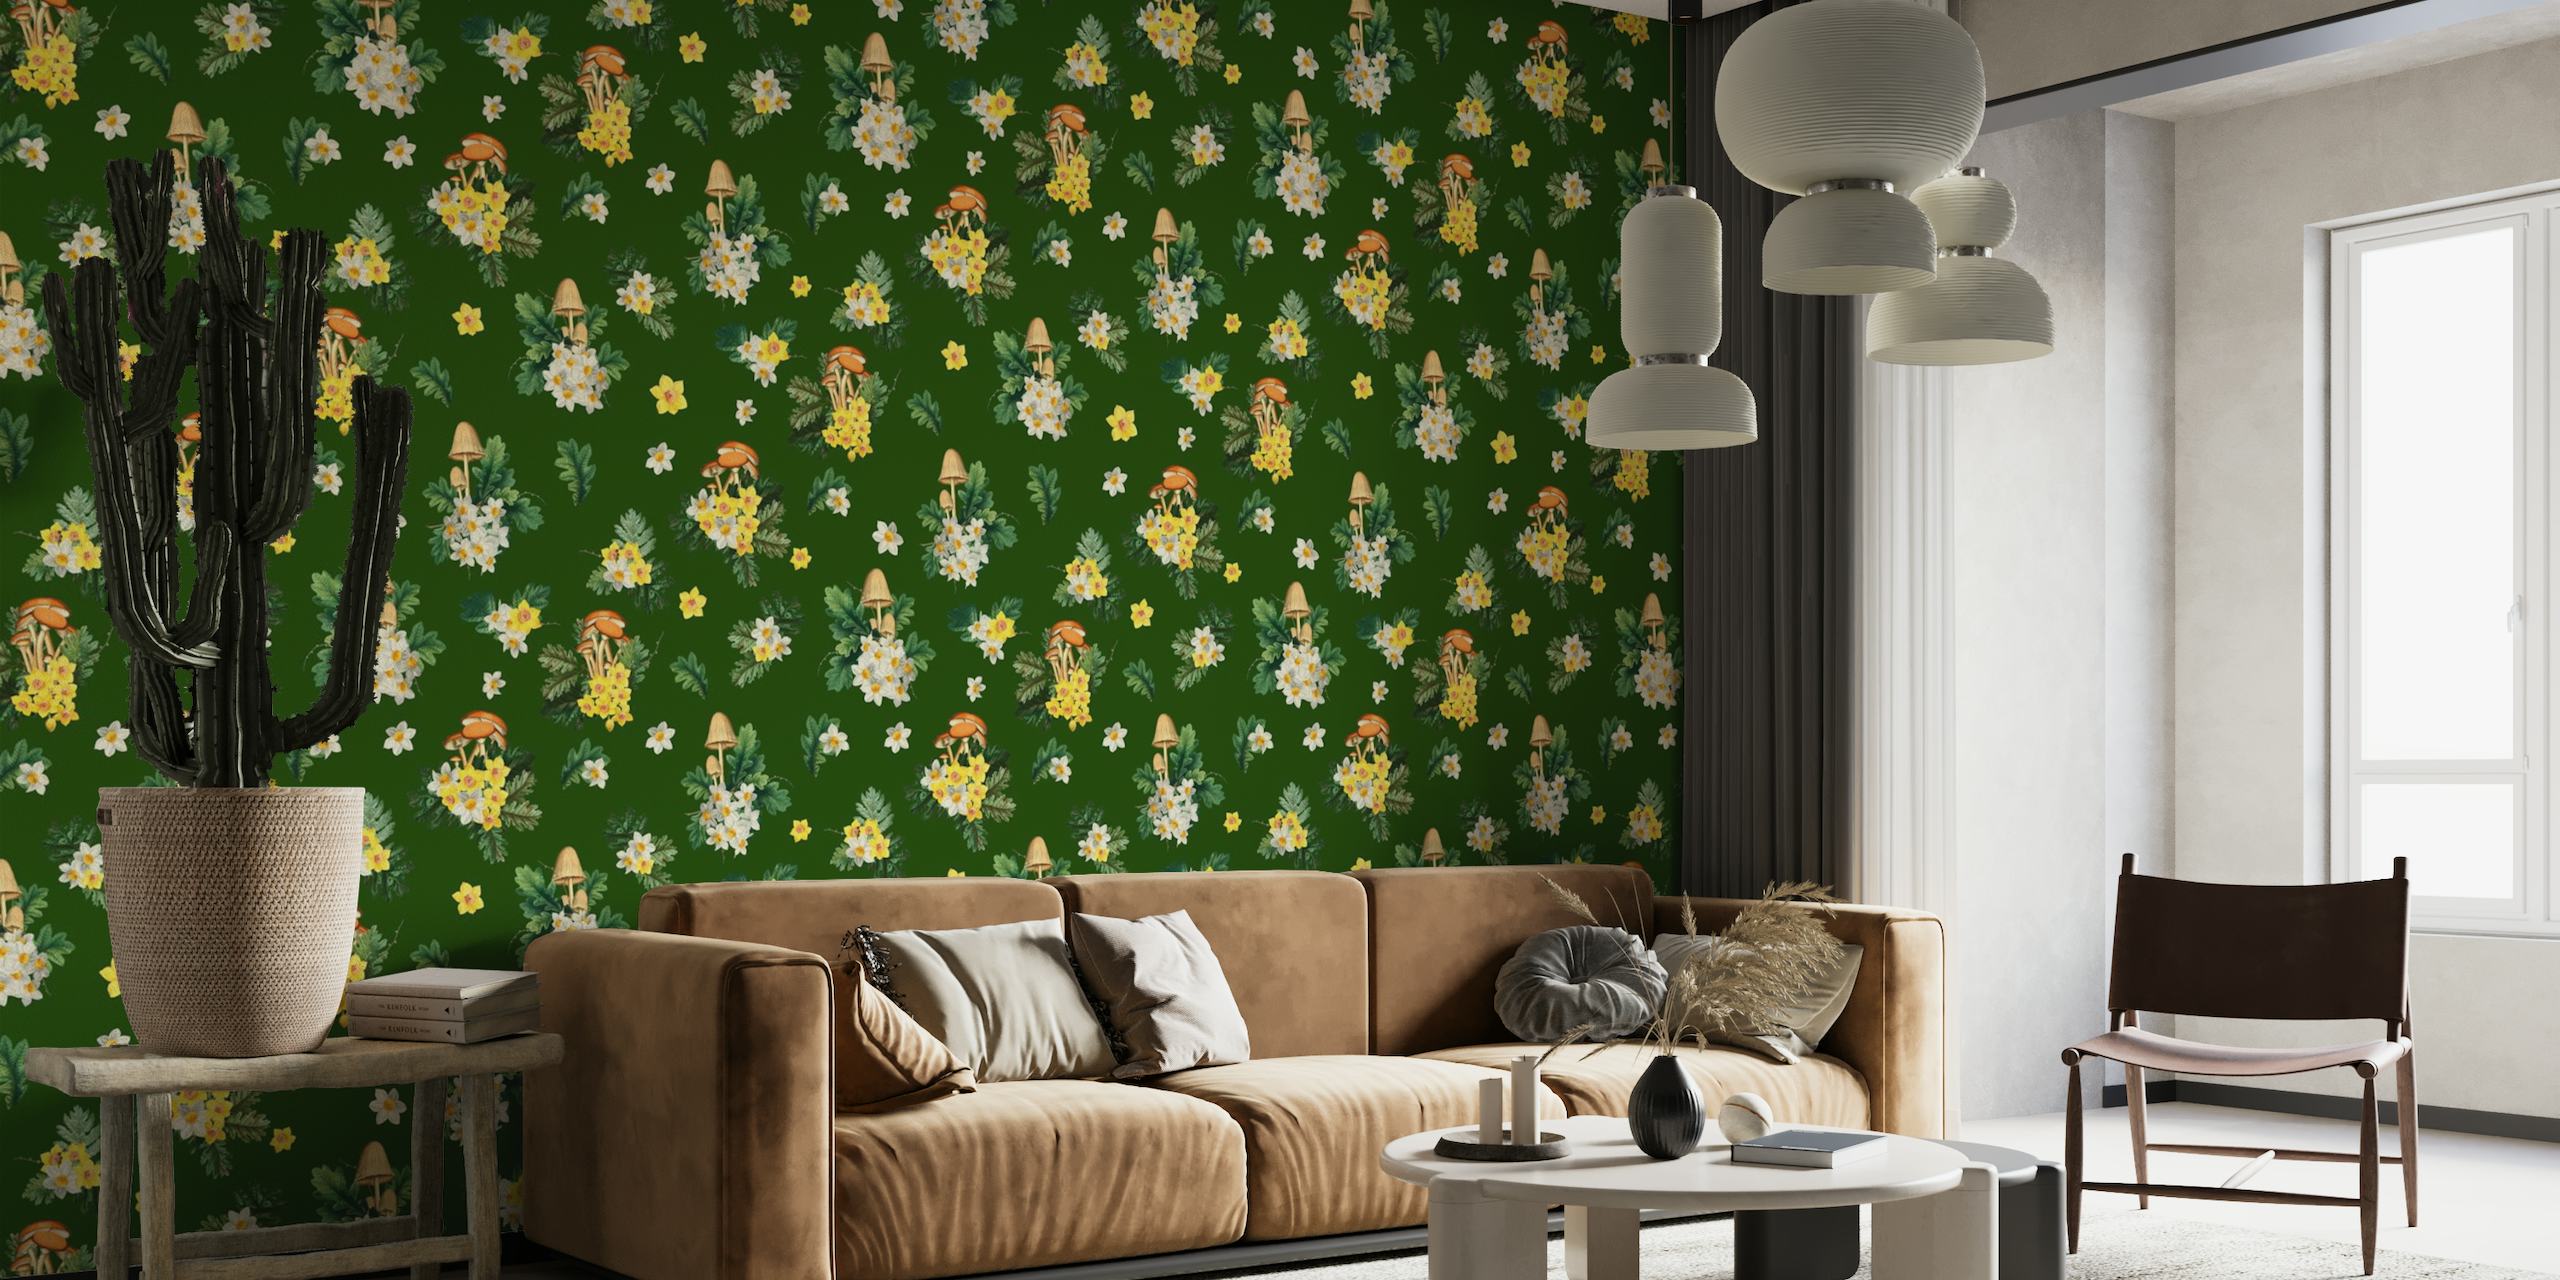 Illustrativ tapet av svamp och vilda blommor på en grön bakgrund, perfekt för ett rum med naturtema.